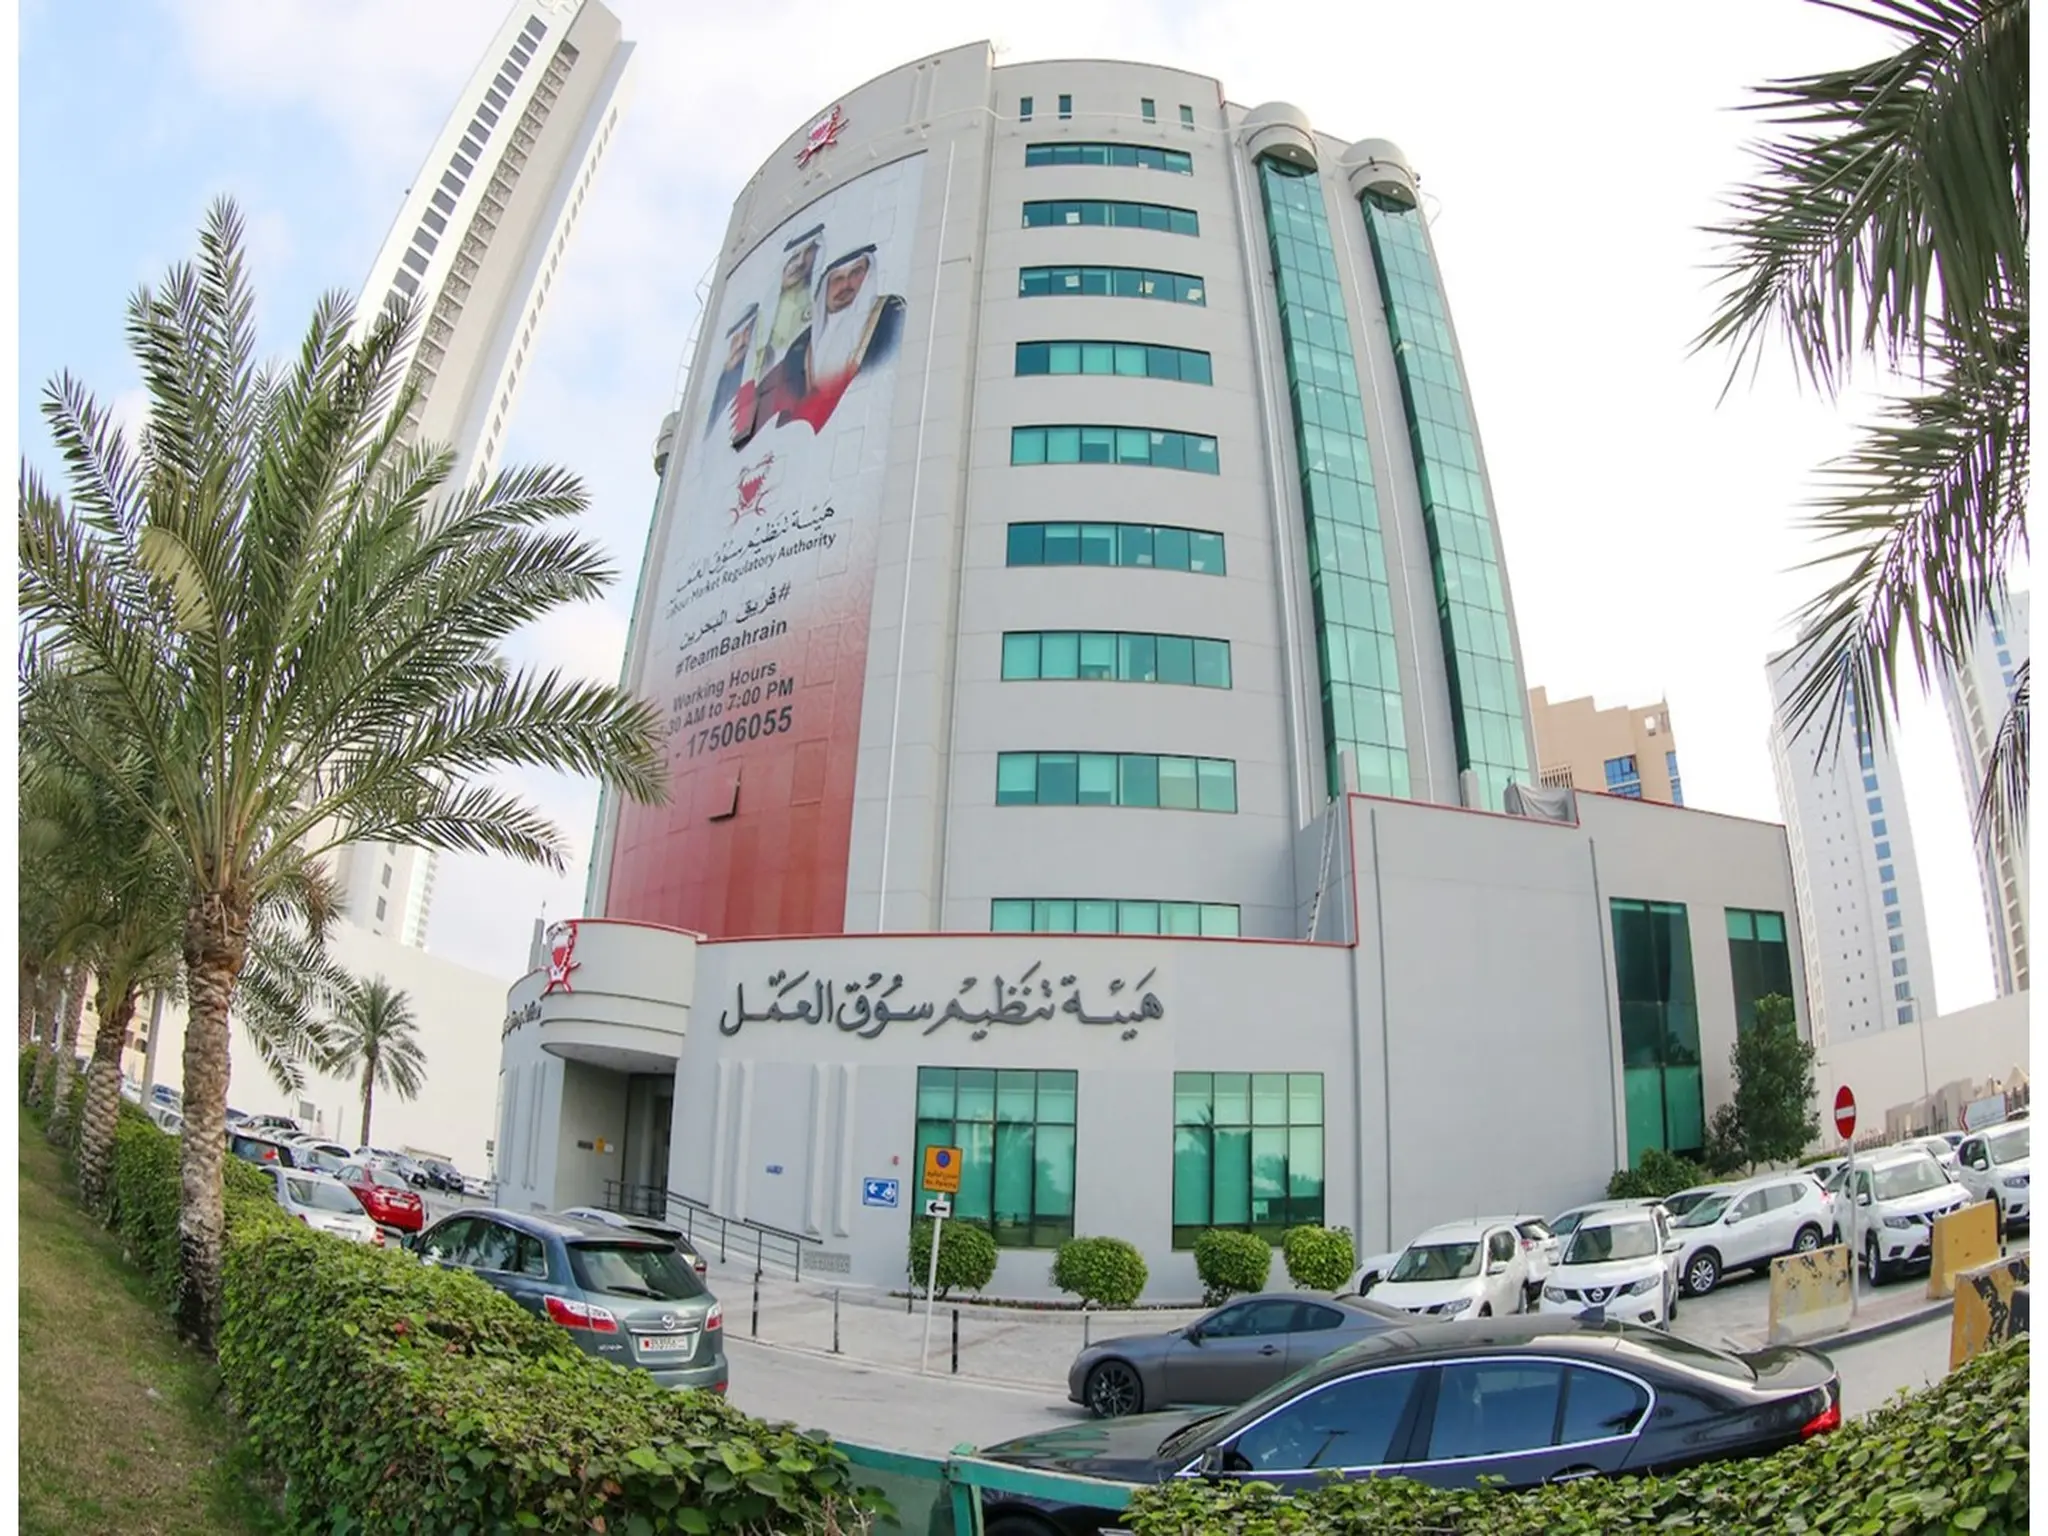 هيئة تنظيم العمل بالبحرين تطلق إستراتجية جديدة لخدمة أصحاب الأعمال